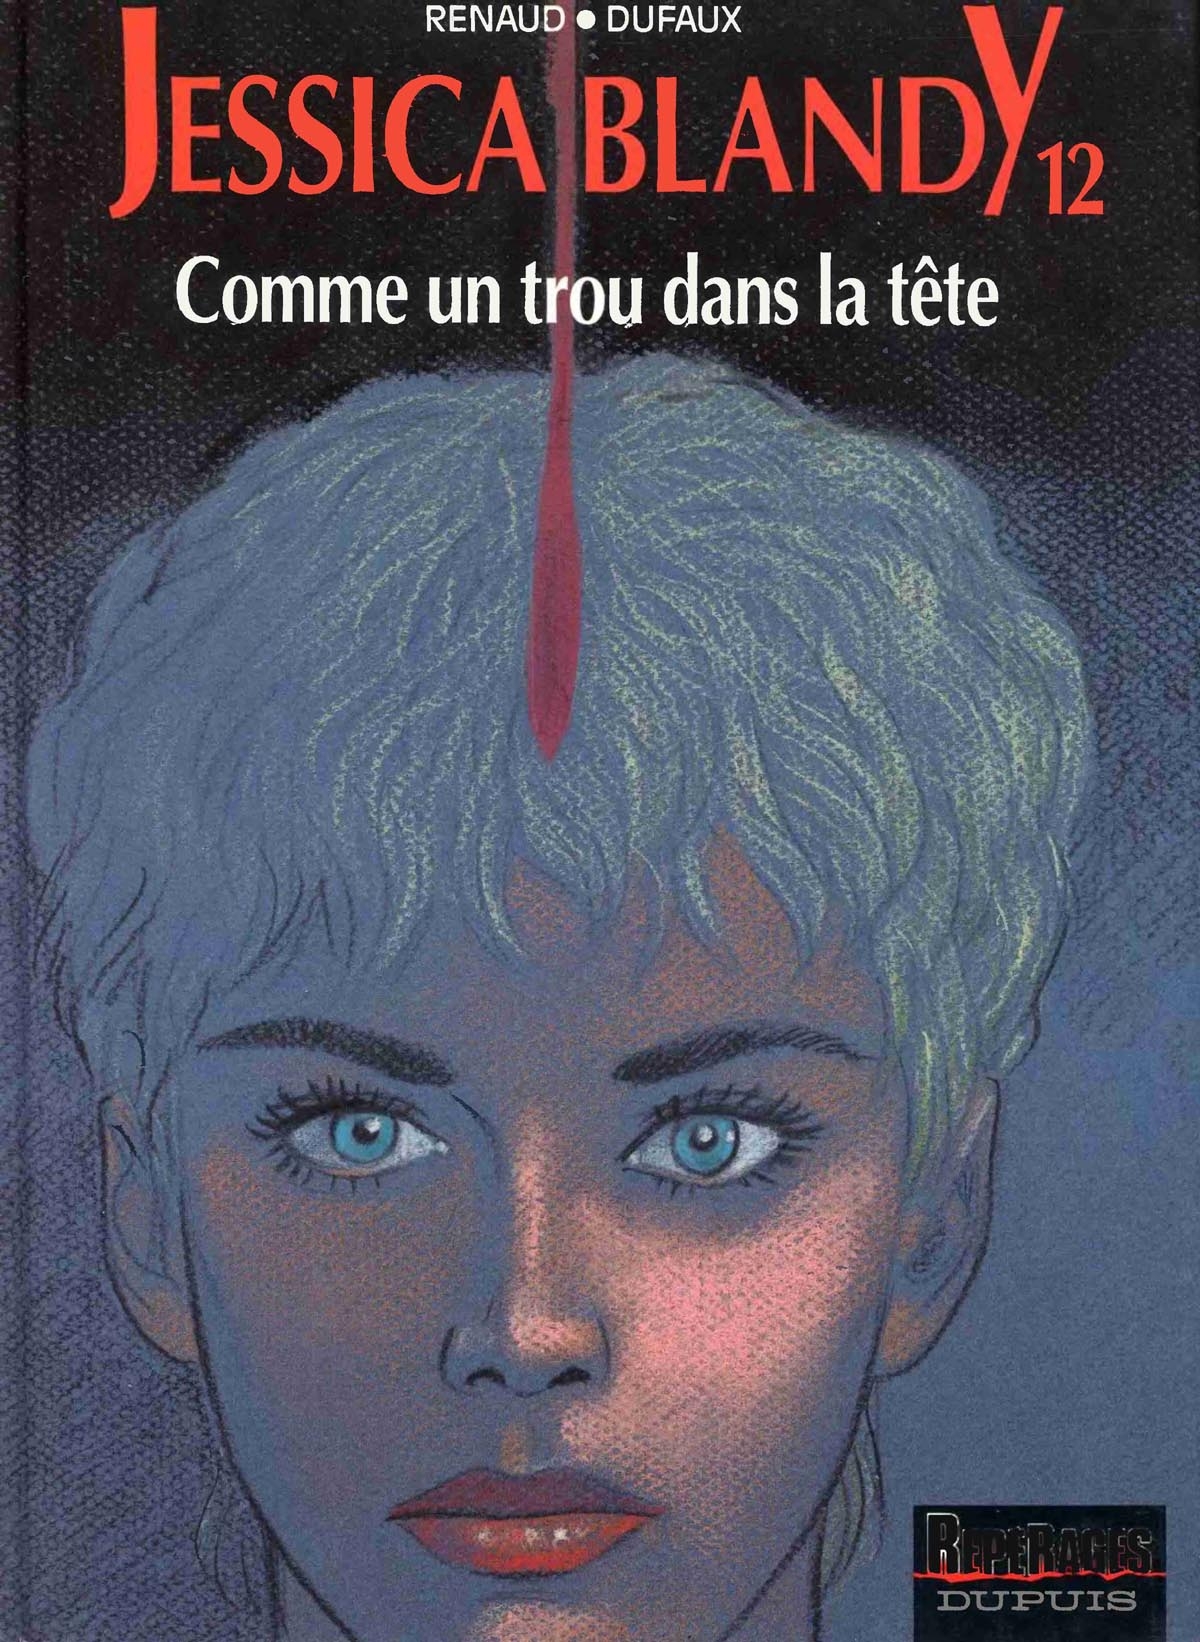 [Renaud, Dufaux] Jessica Blandy - 12 - Comme un trou dans la tête [French] 0